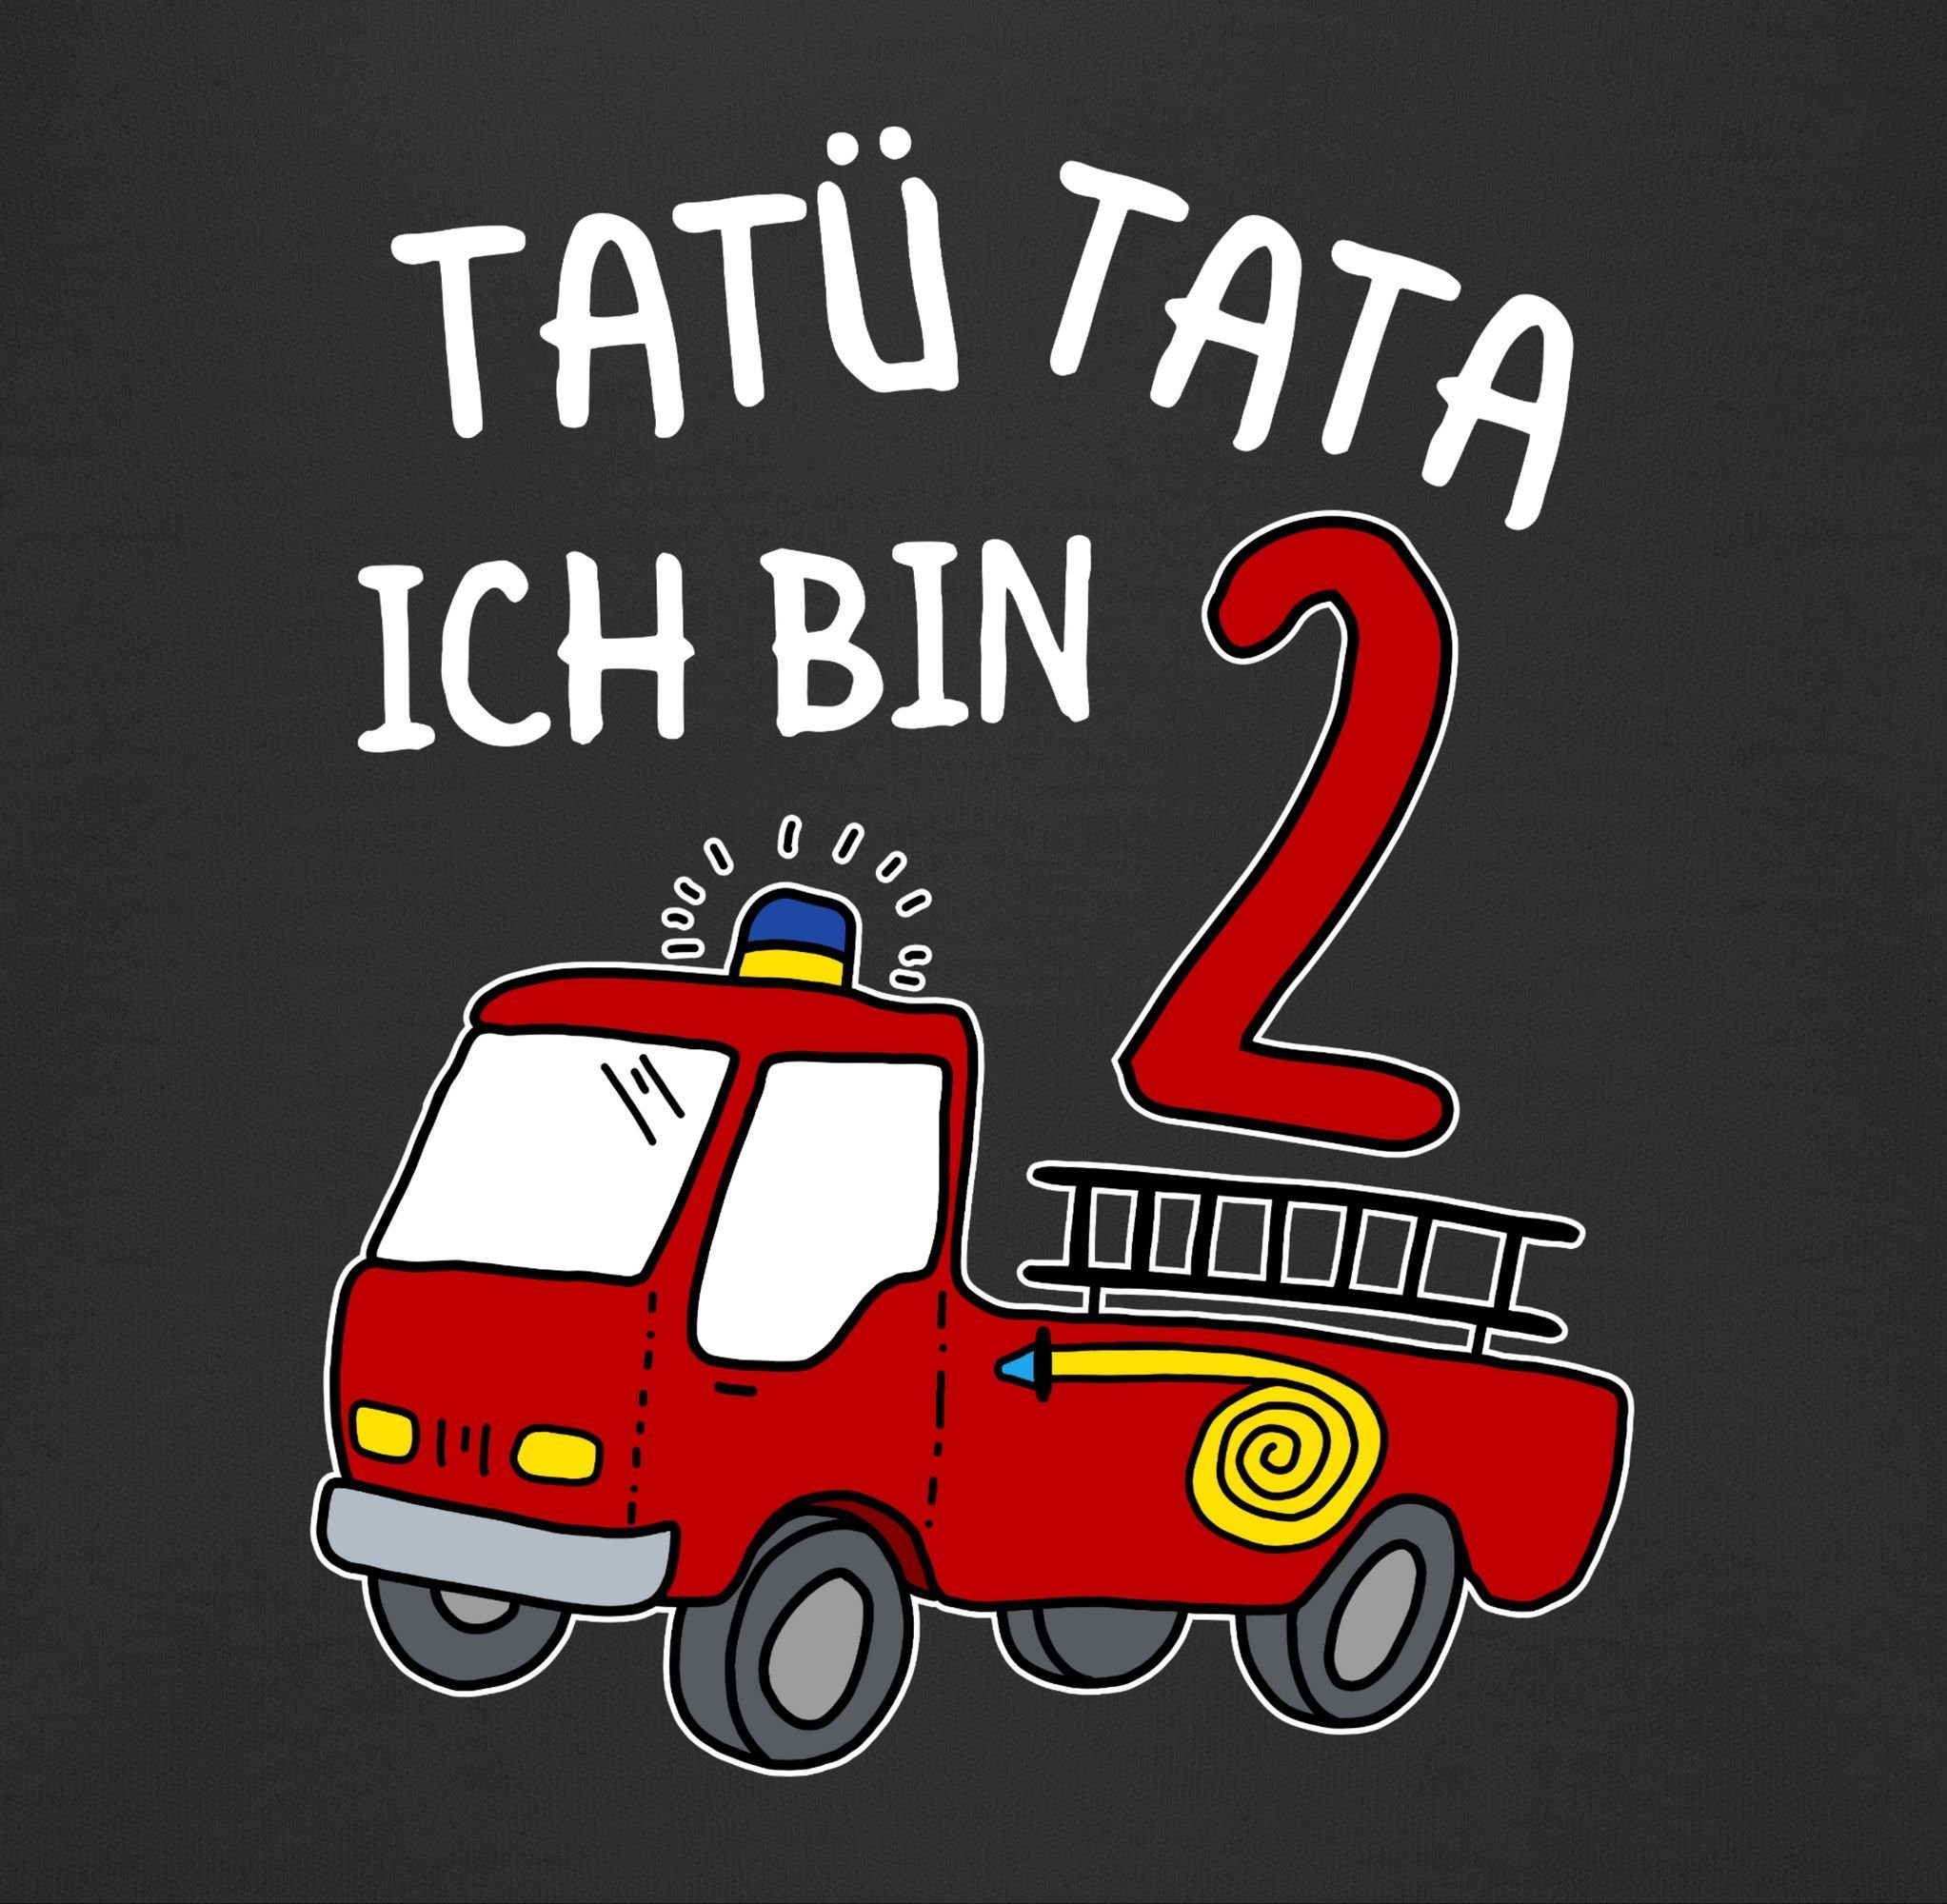 Shirtracer Sweatshirt Schwarz Tata bin 2. Geburtstag zwei Ich Feuerwehrauto 2 Tatü